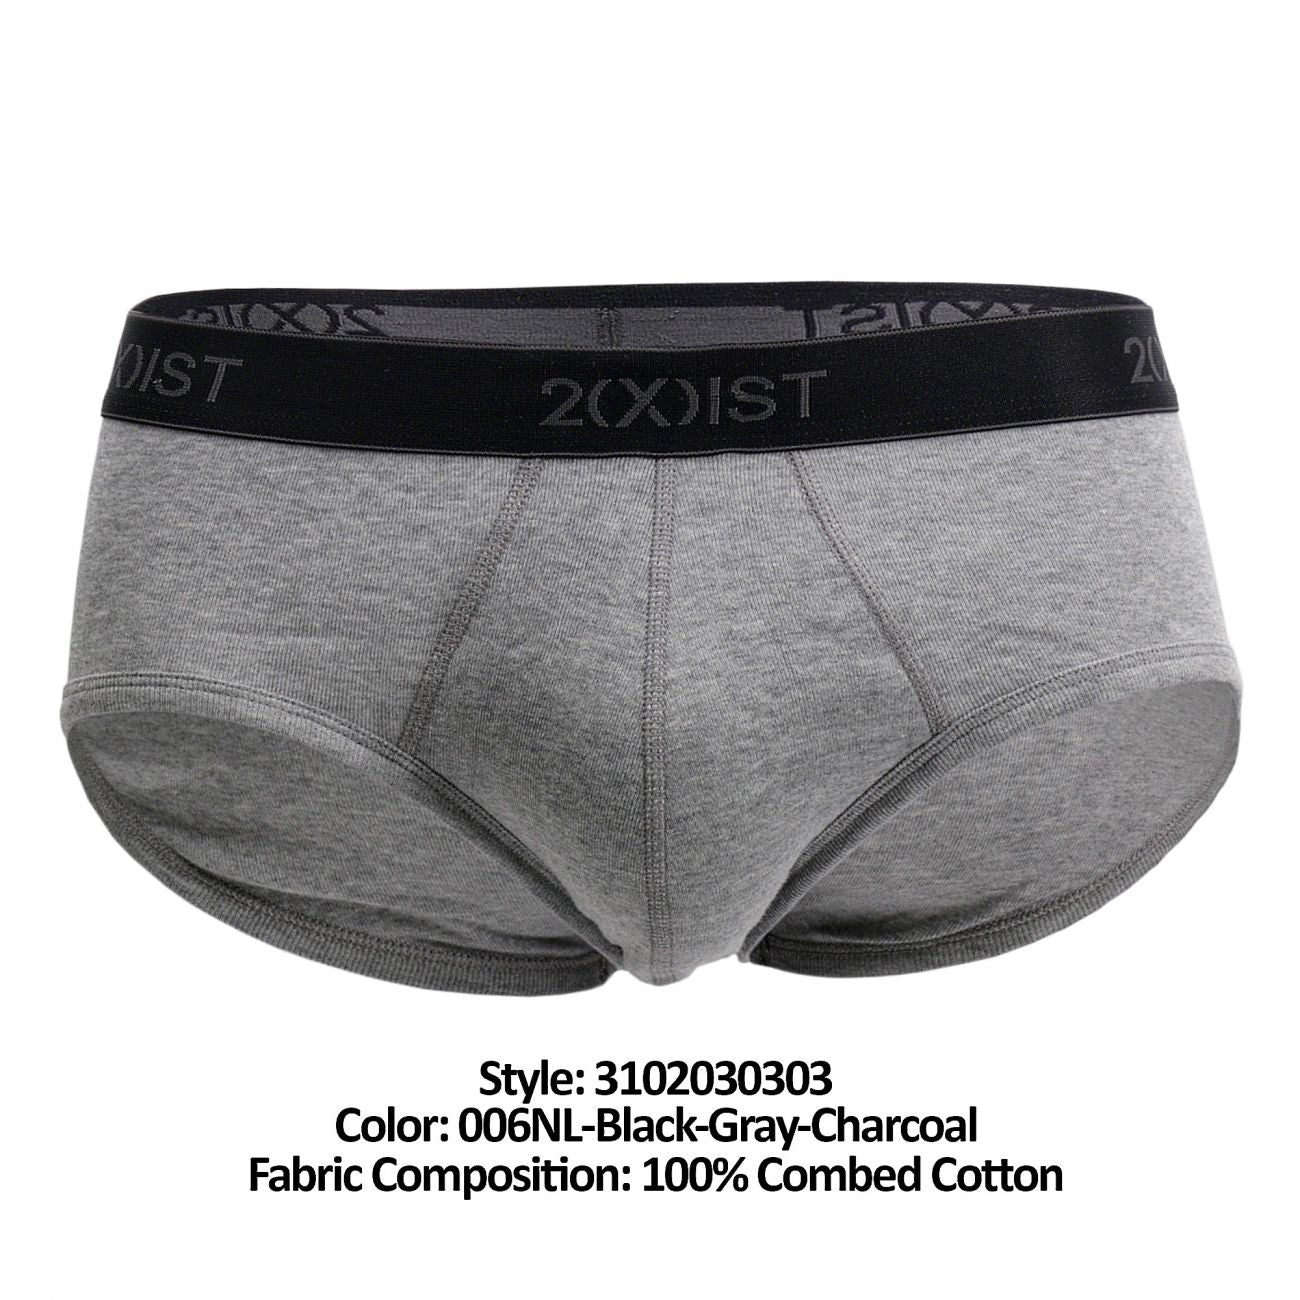 2(X)IST 3102030303 Cotton 3PK Contour Pouch Briefs Black Gray Charcoal